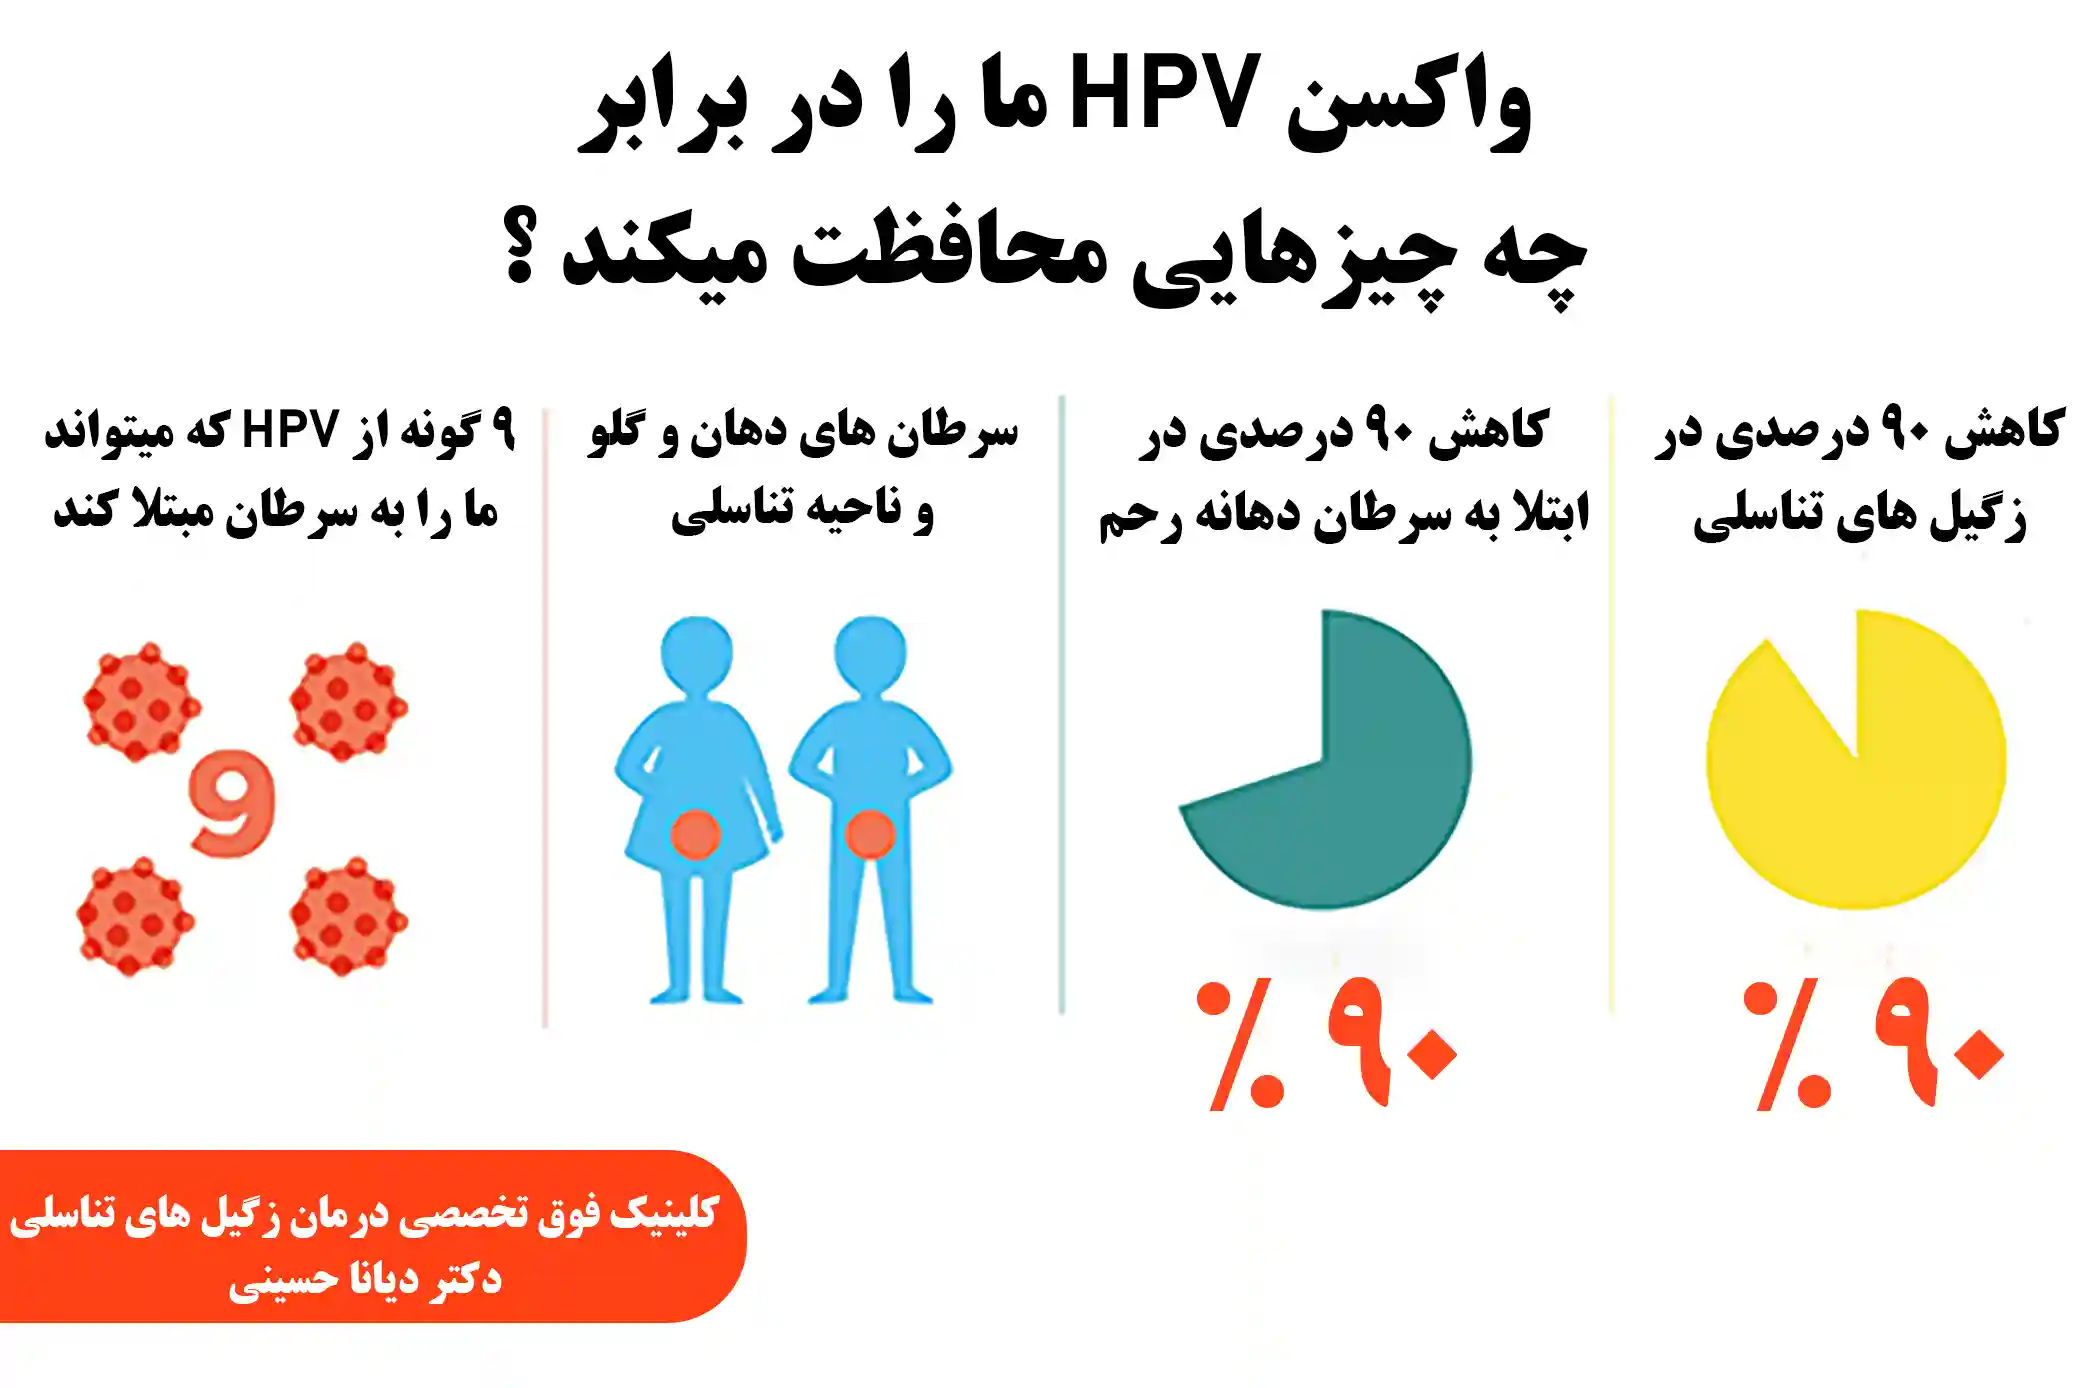 واکسن HPV از ما در مقابل سرطان محافظت میکند . دکتر دیانا حسینی